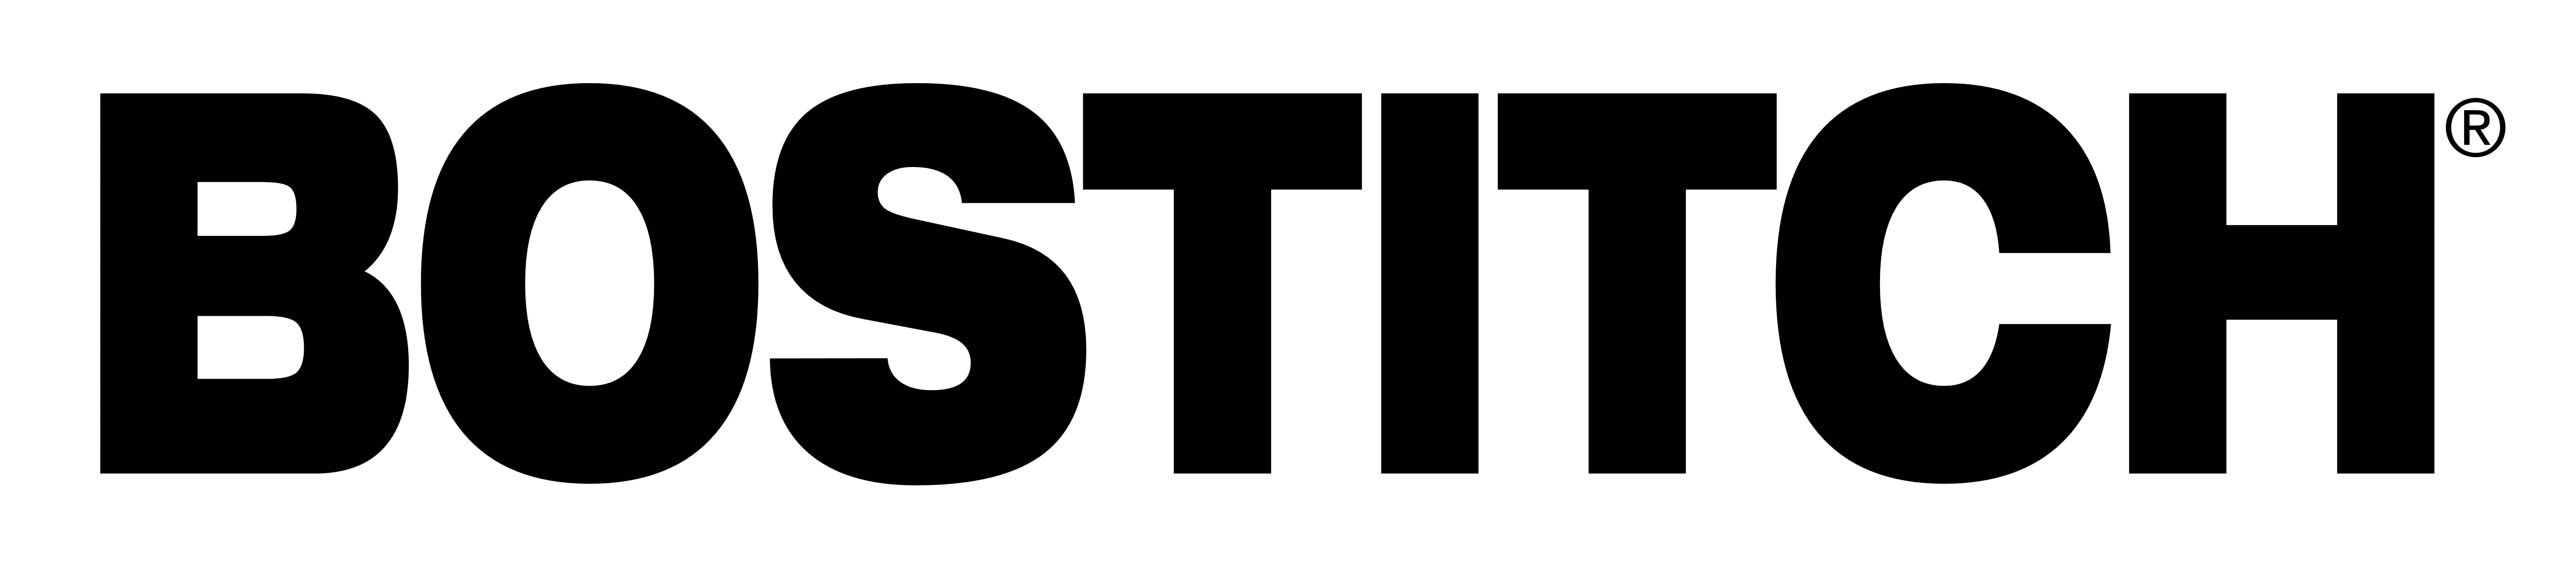 Bostitch Logo - Bostitch – Logos Download